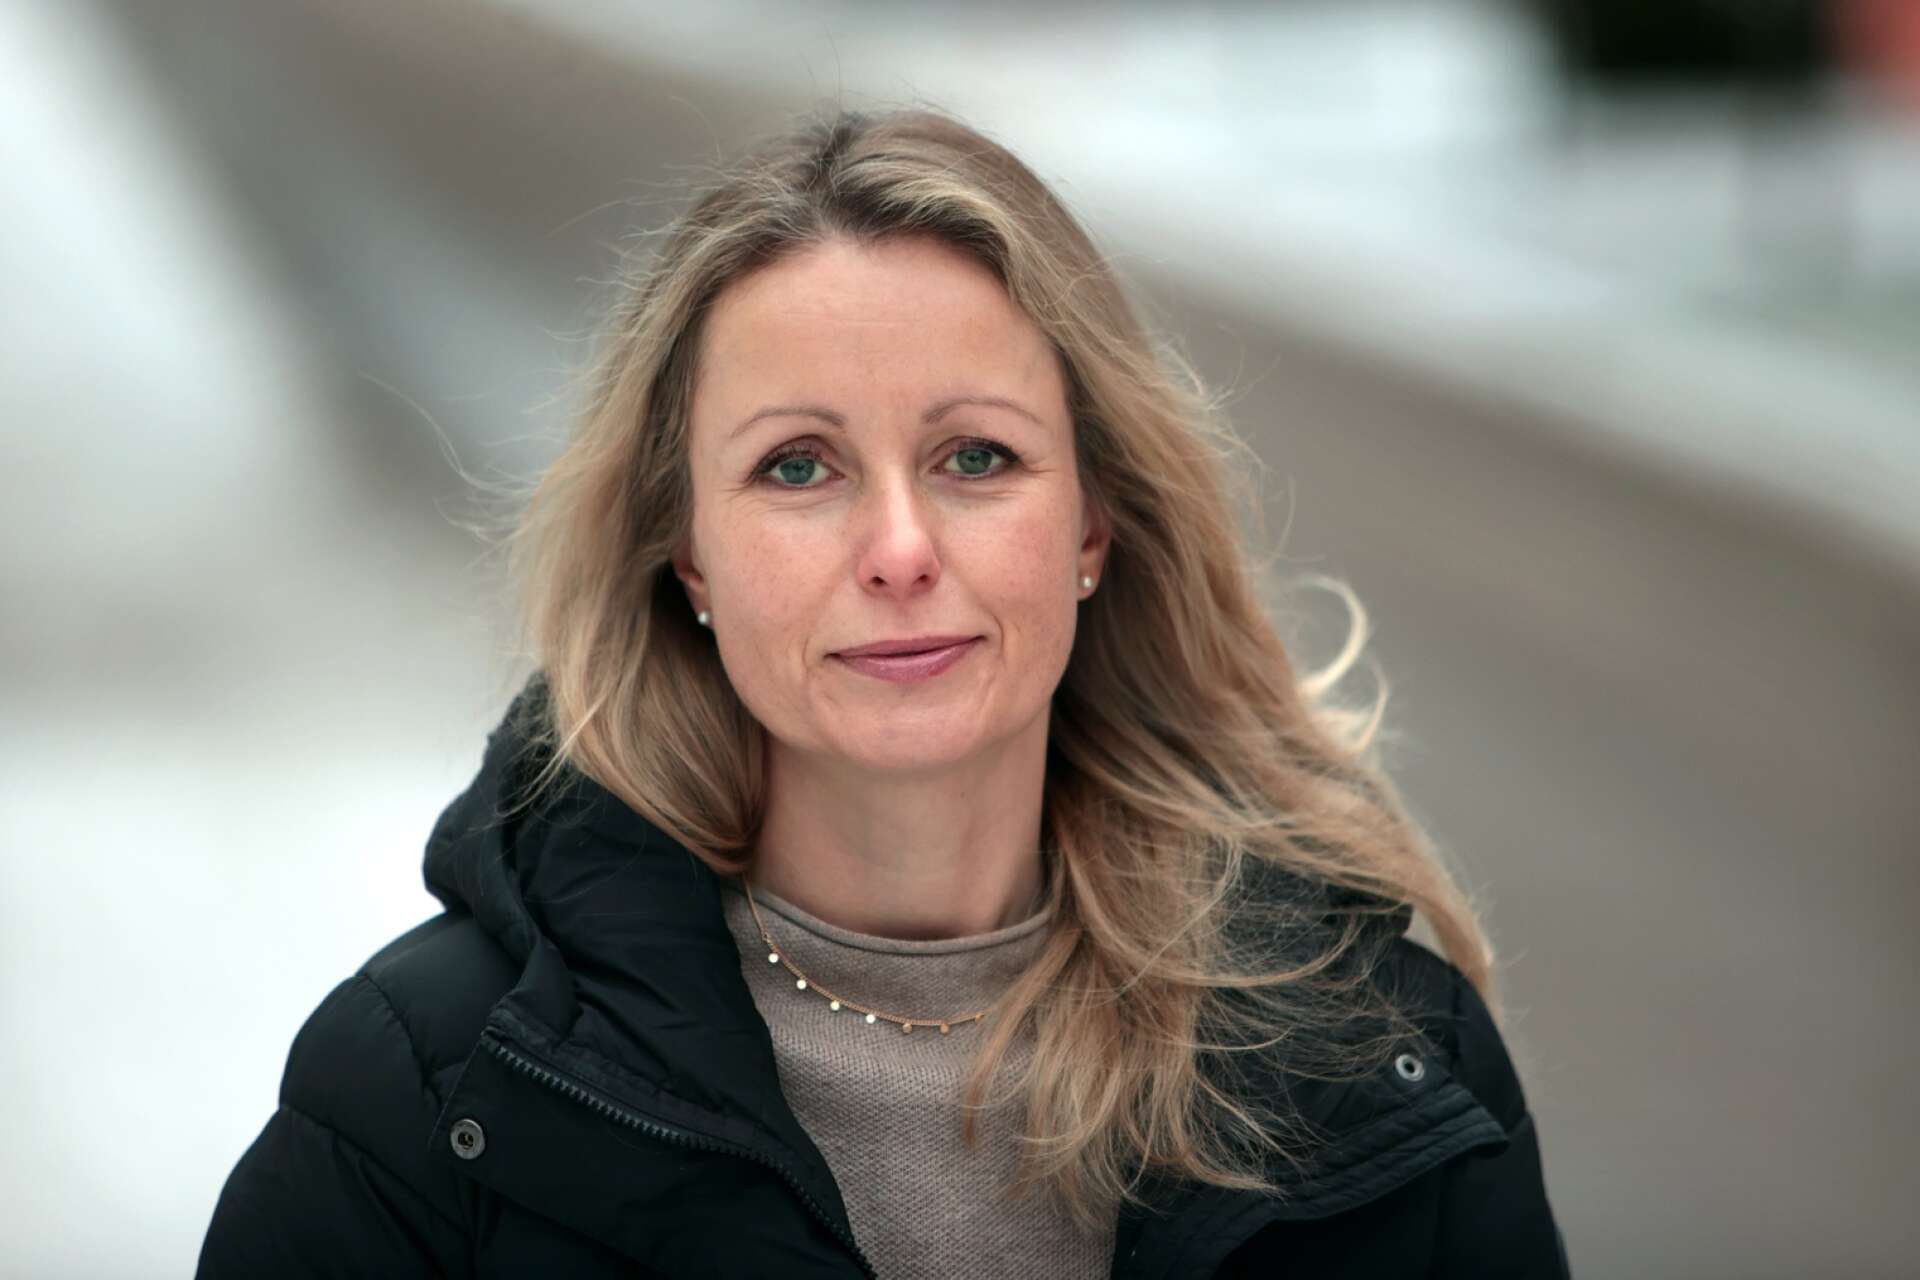 Det finns ännu tid att skydda sig mot årets virussjukdomar enligt Anna Skogstam, smittskyddsläkare på Region Värmland.